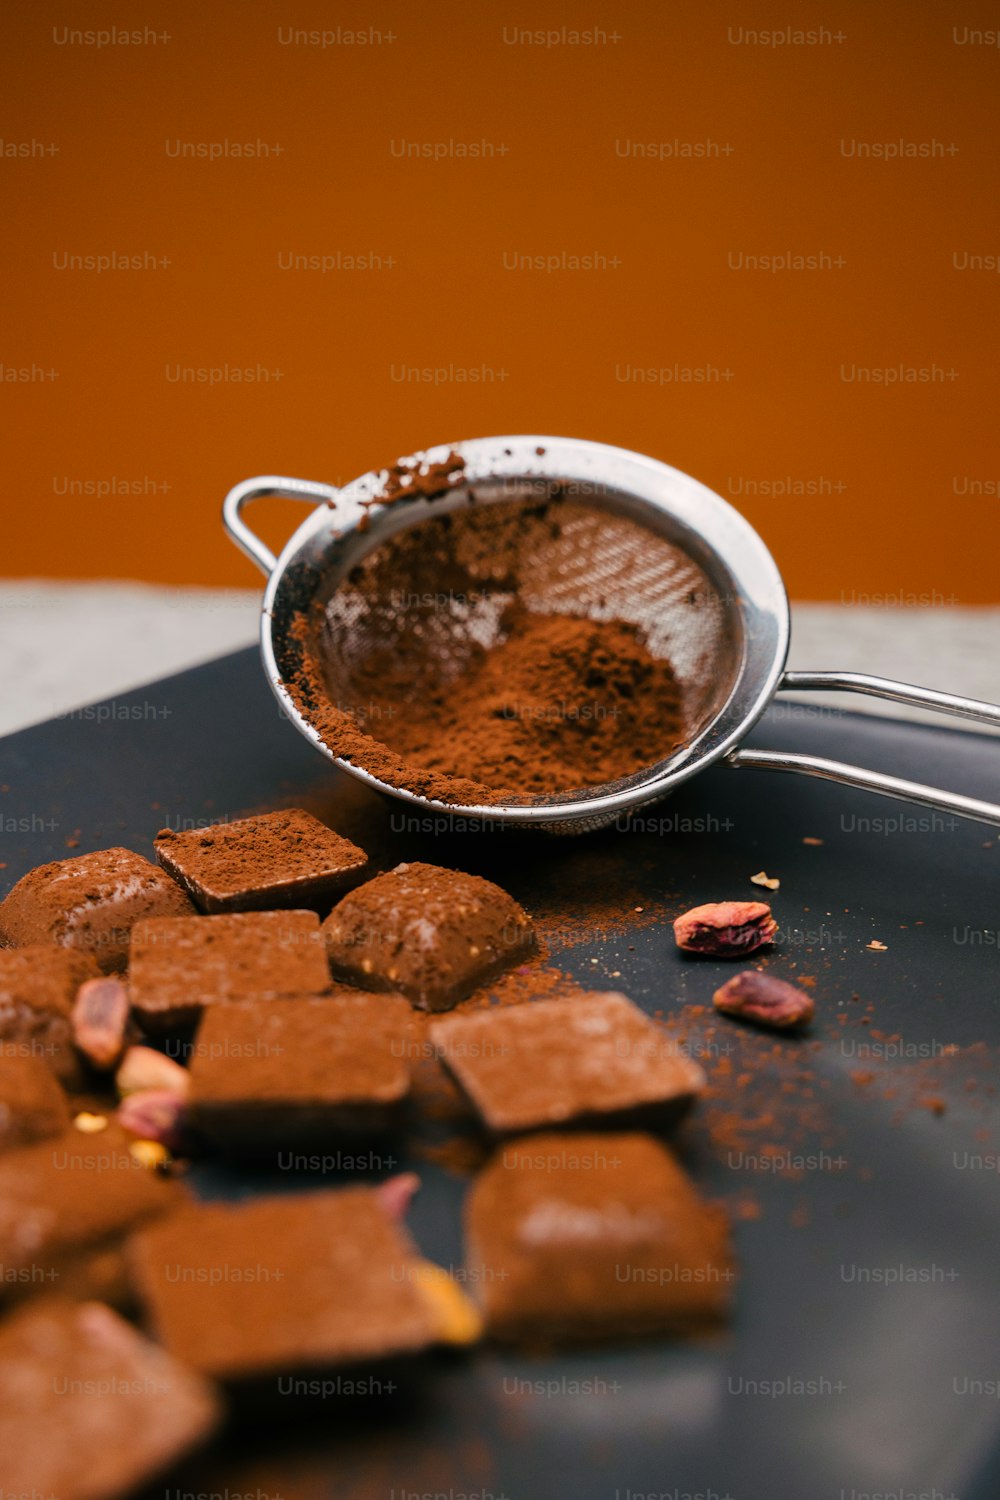 ココアのスクープの横にあるチョコレート片で満たされた金属製のボウル